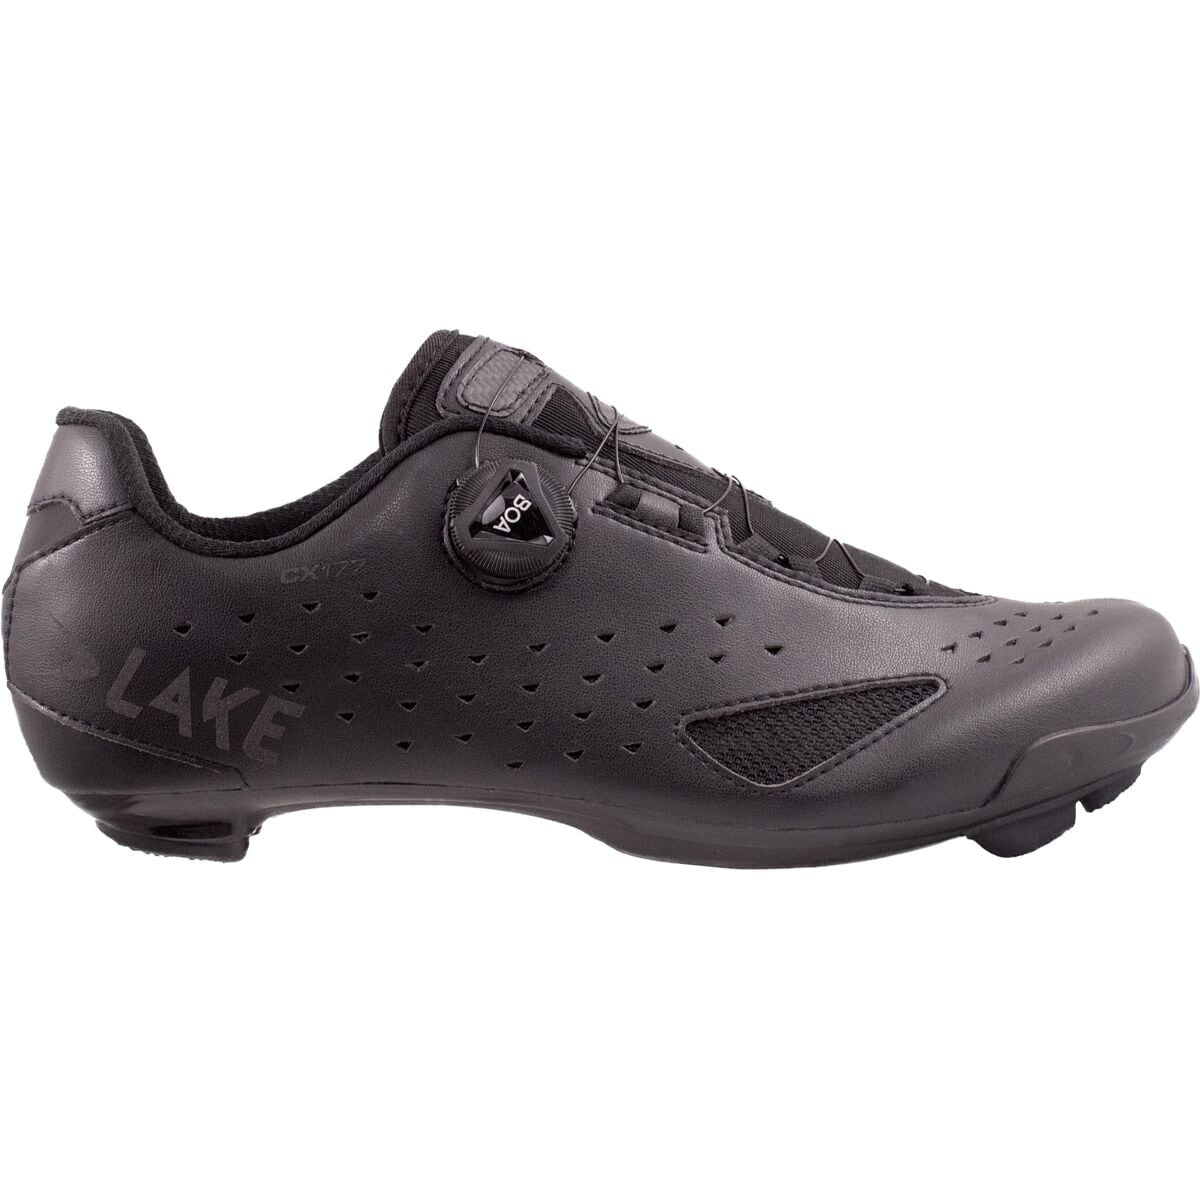 Lake CX177 Cycling Shoe - Men's Black/Black Reflective, 45.0